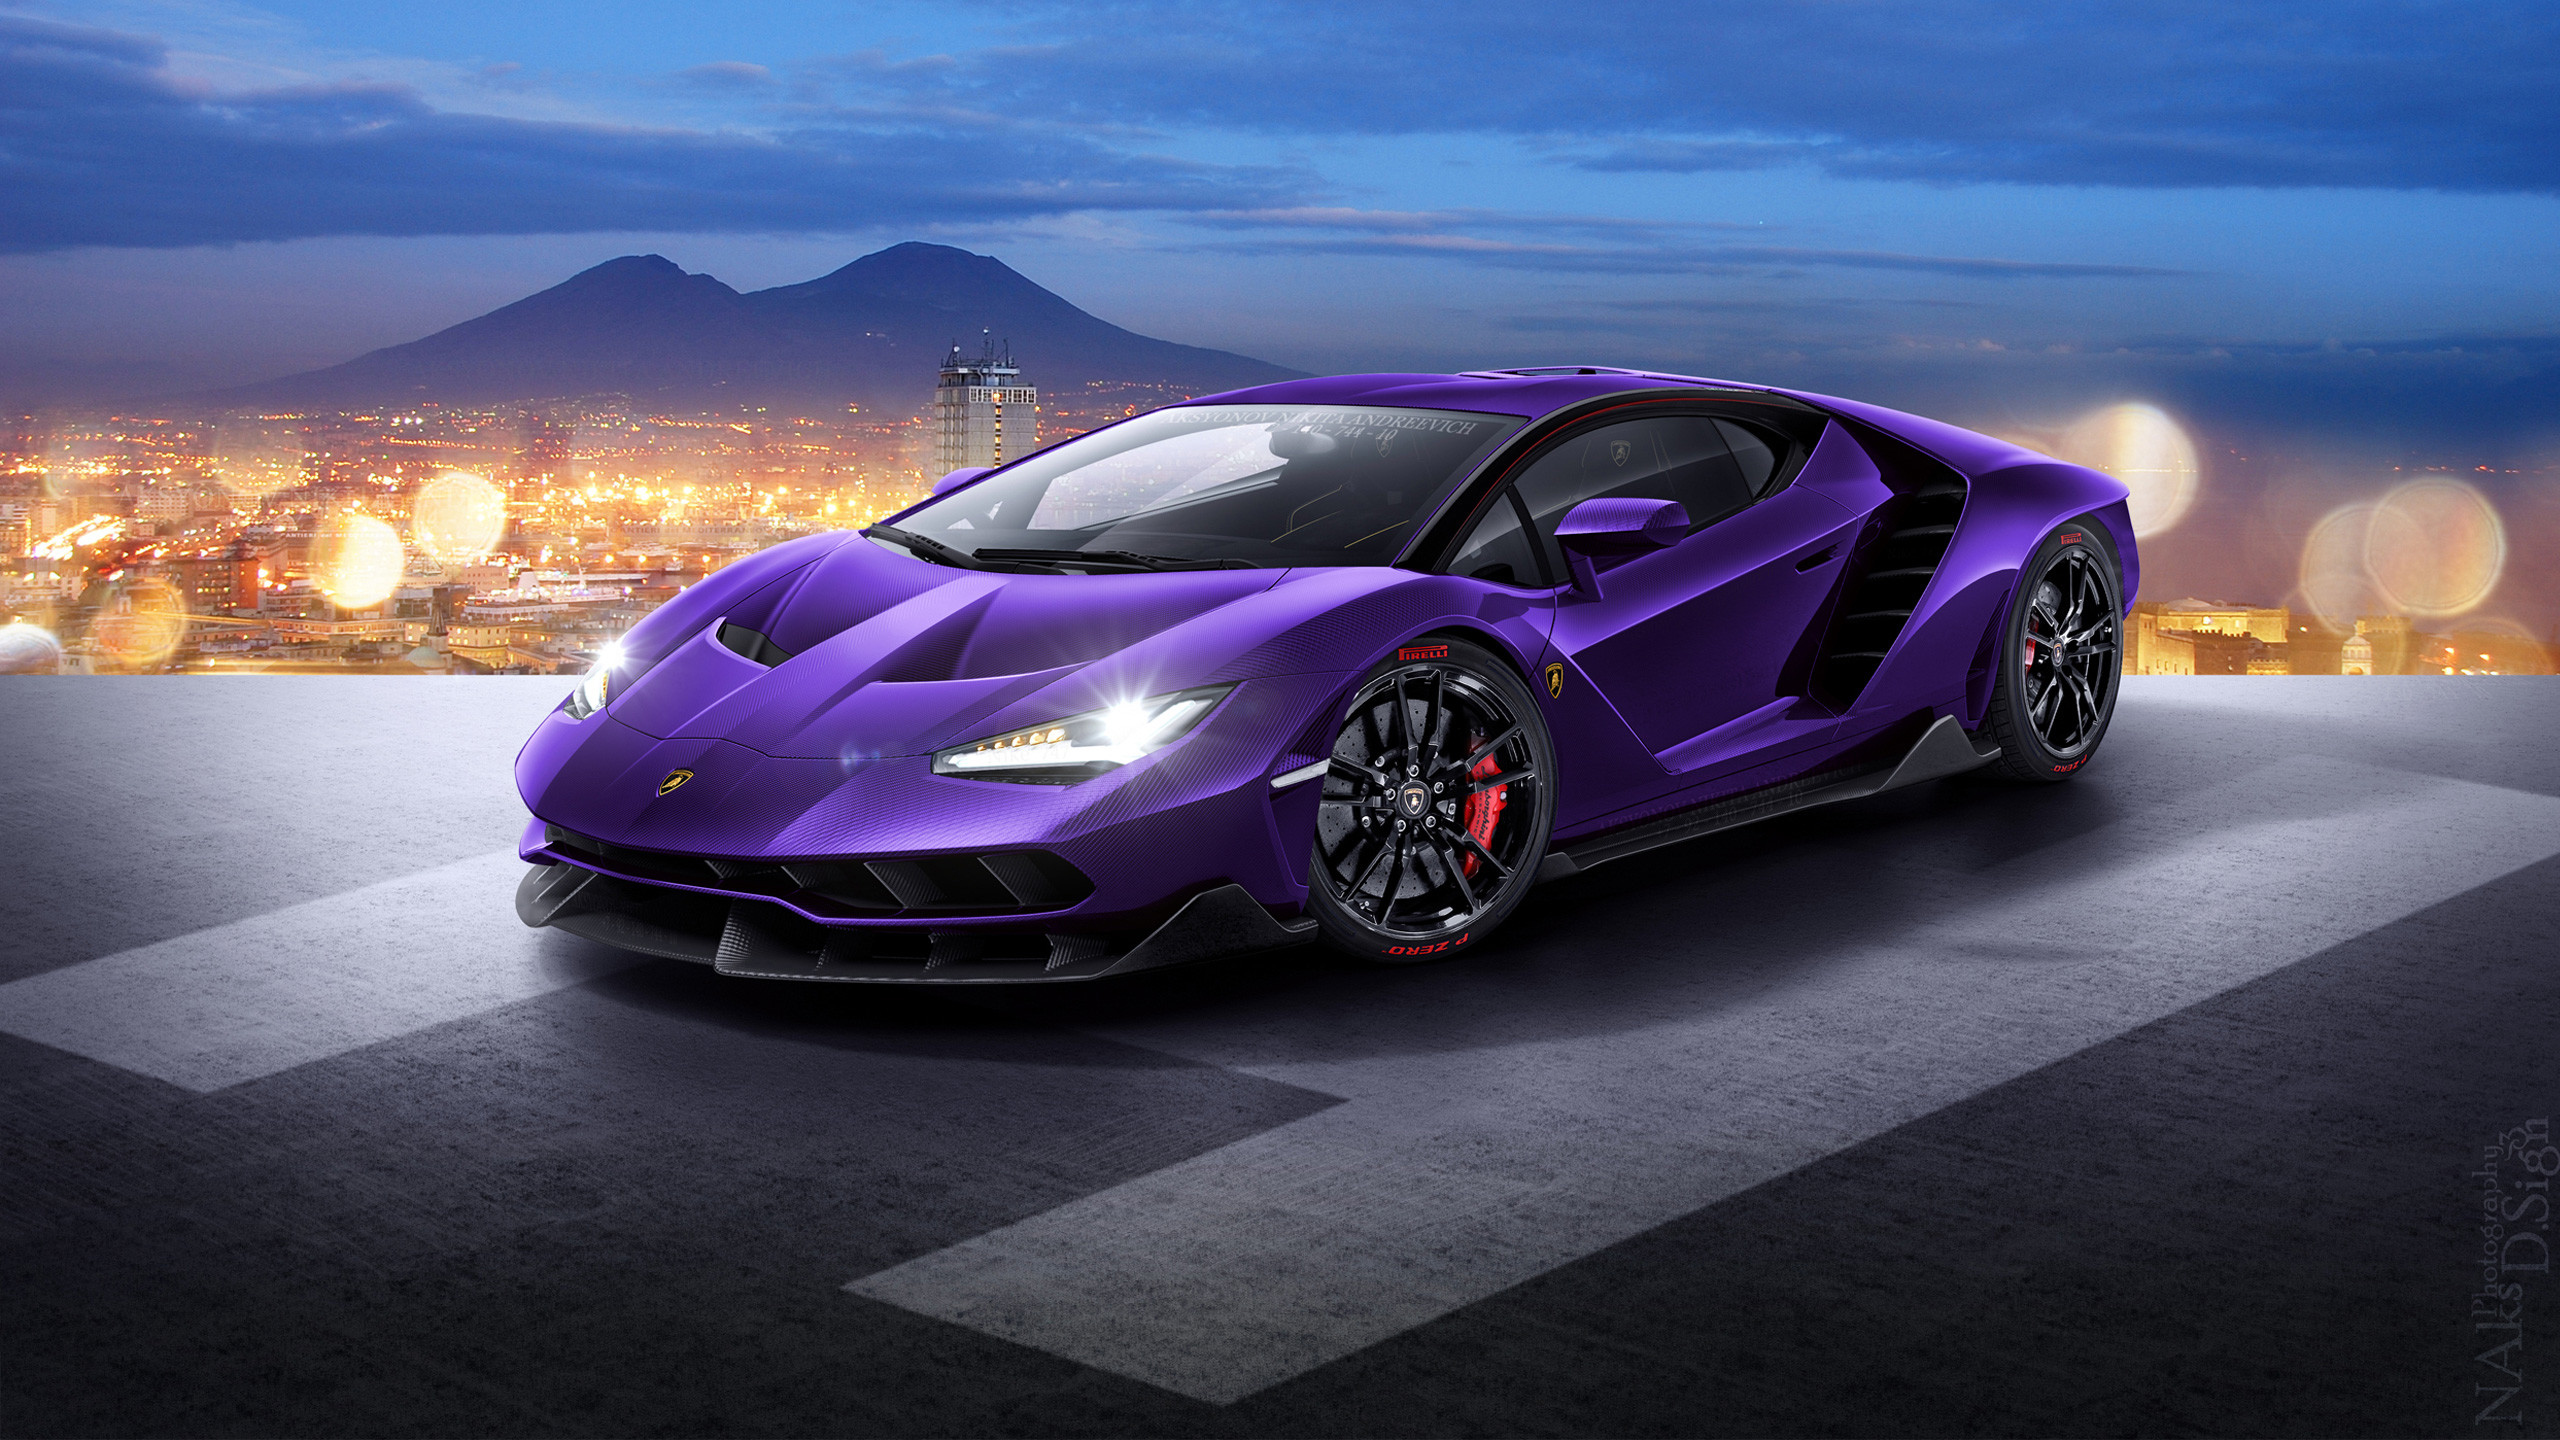 Cool Bugatti Wallpaper High Quality Resolution Is 4k - Purple Lamborghini Centenario , HD Wallpaper & Backgrounds